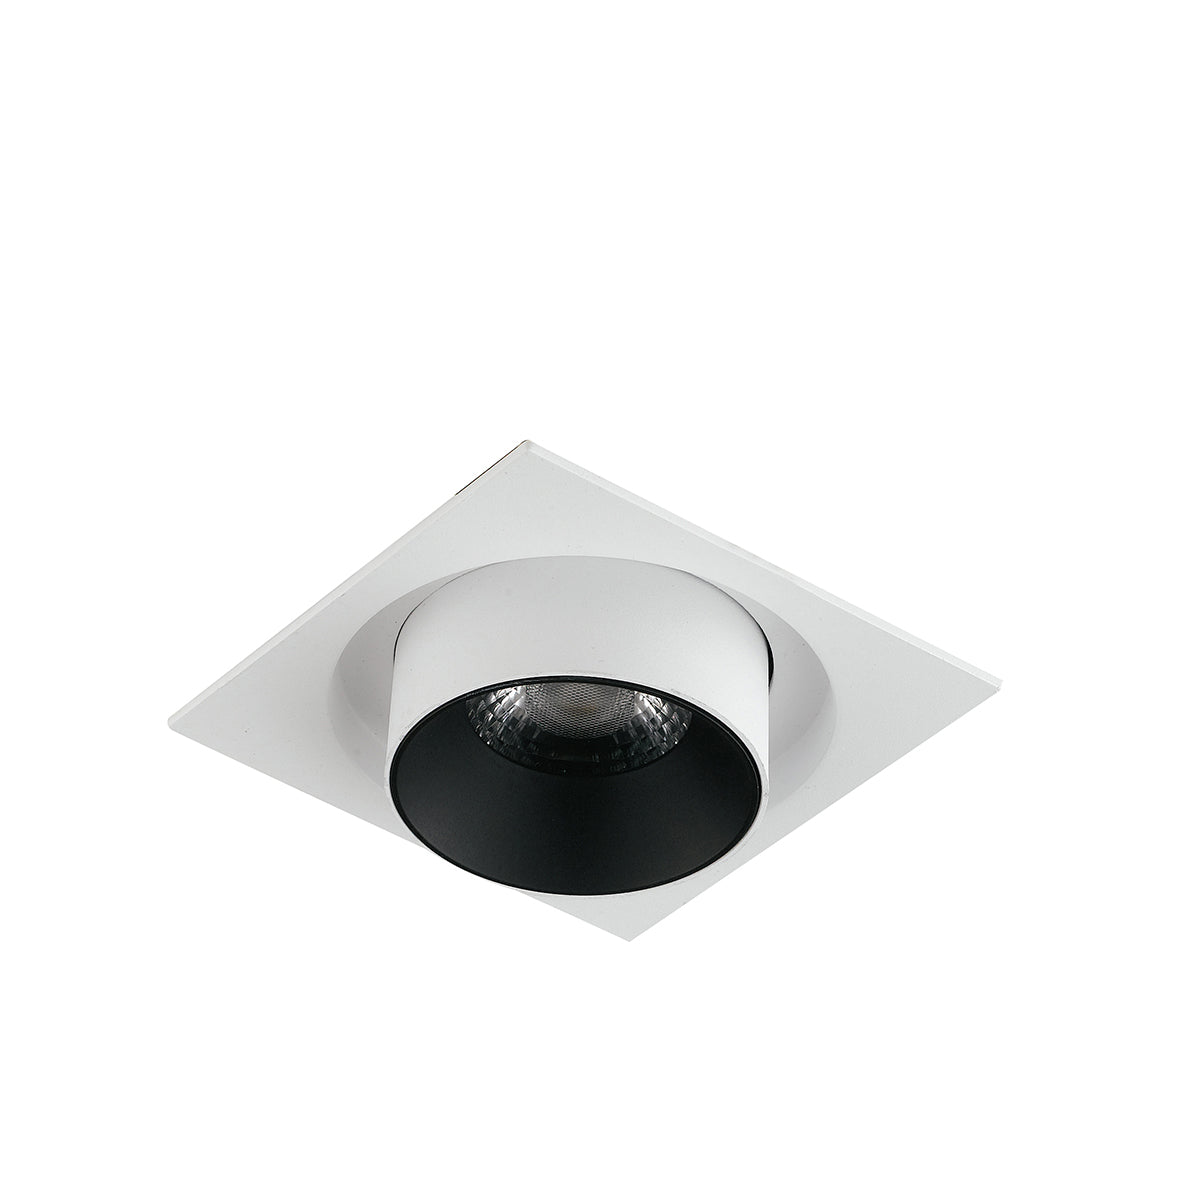 Luminaire encastré LED OUTSIDER avec spot et tête extractible et orientable 30W